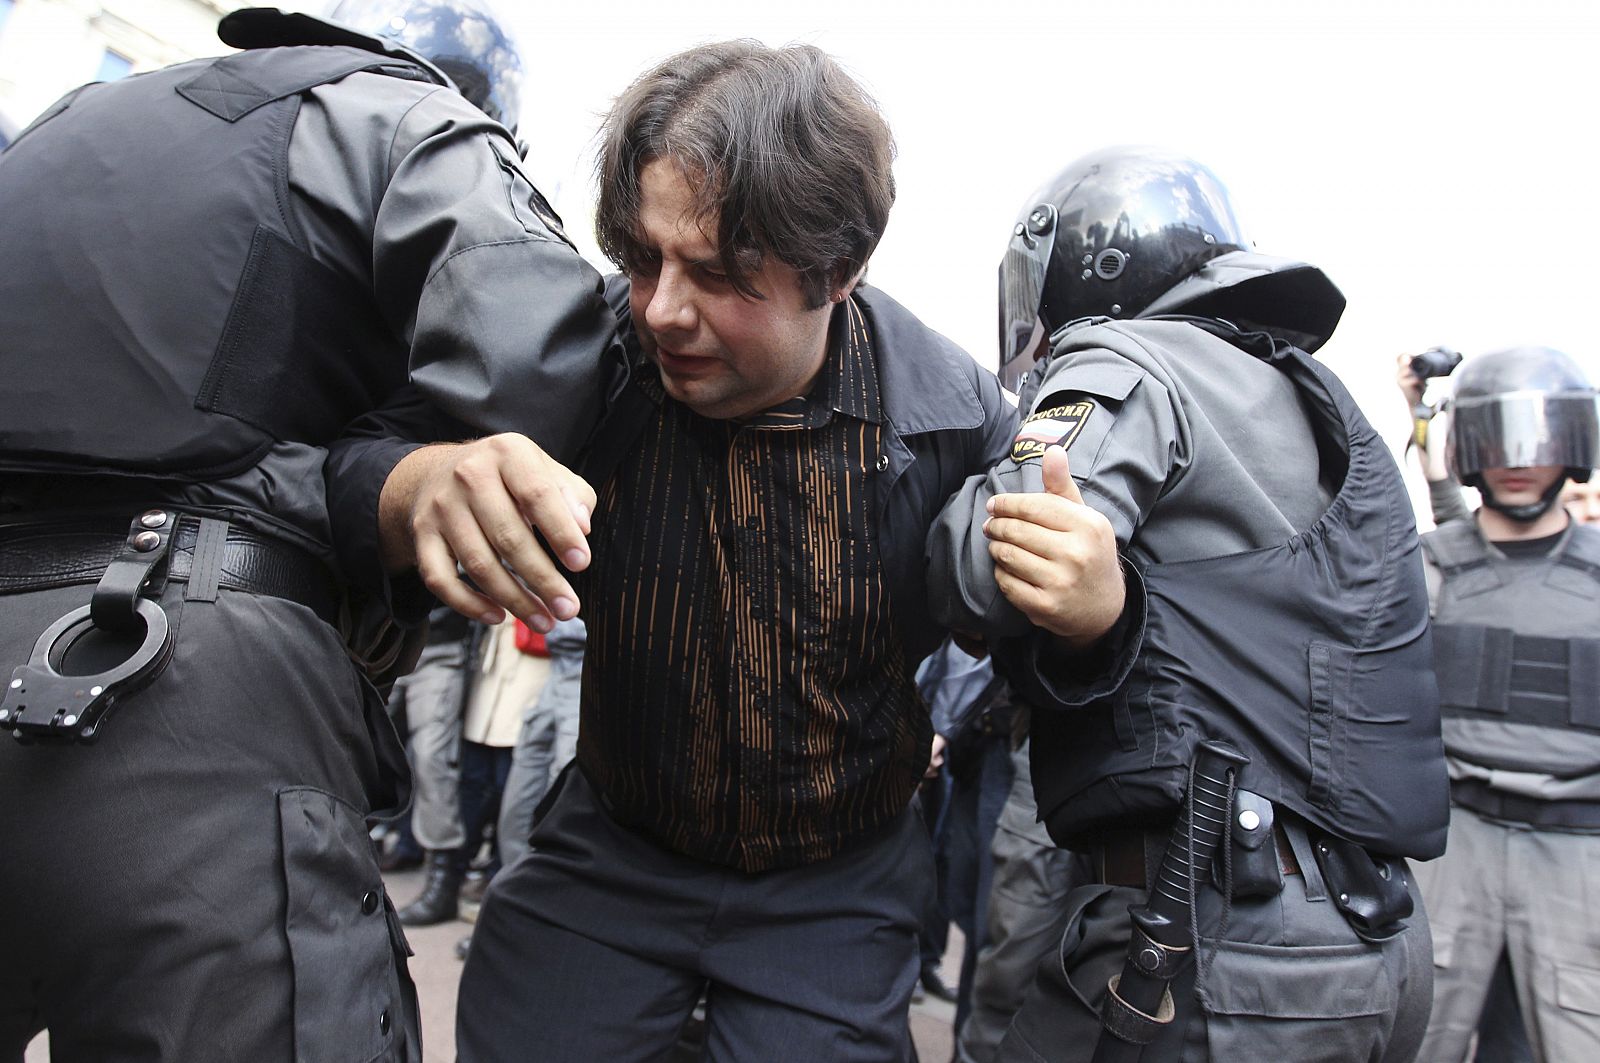 La Policía detiene un militante opositor durante una manifestación no autorizada.